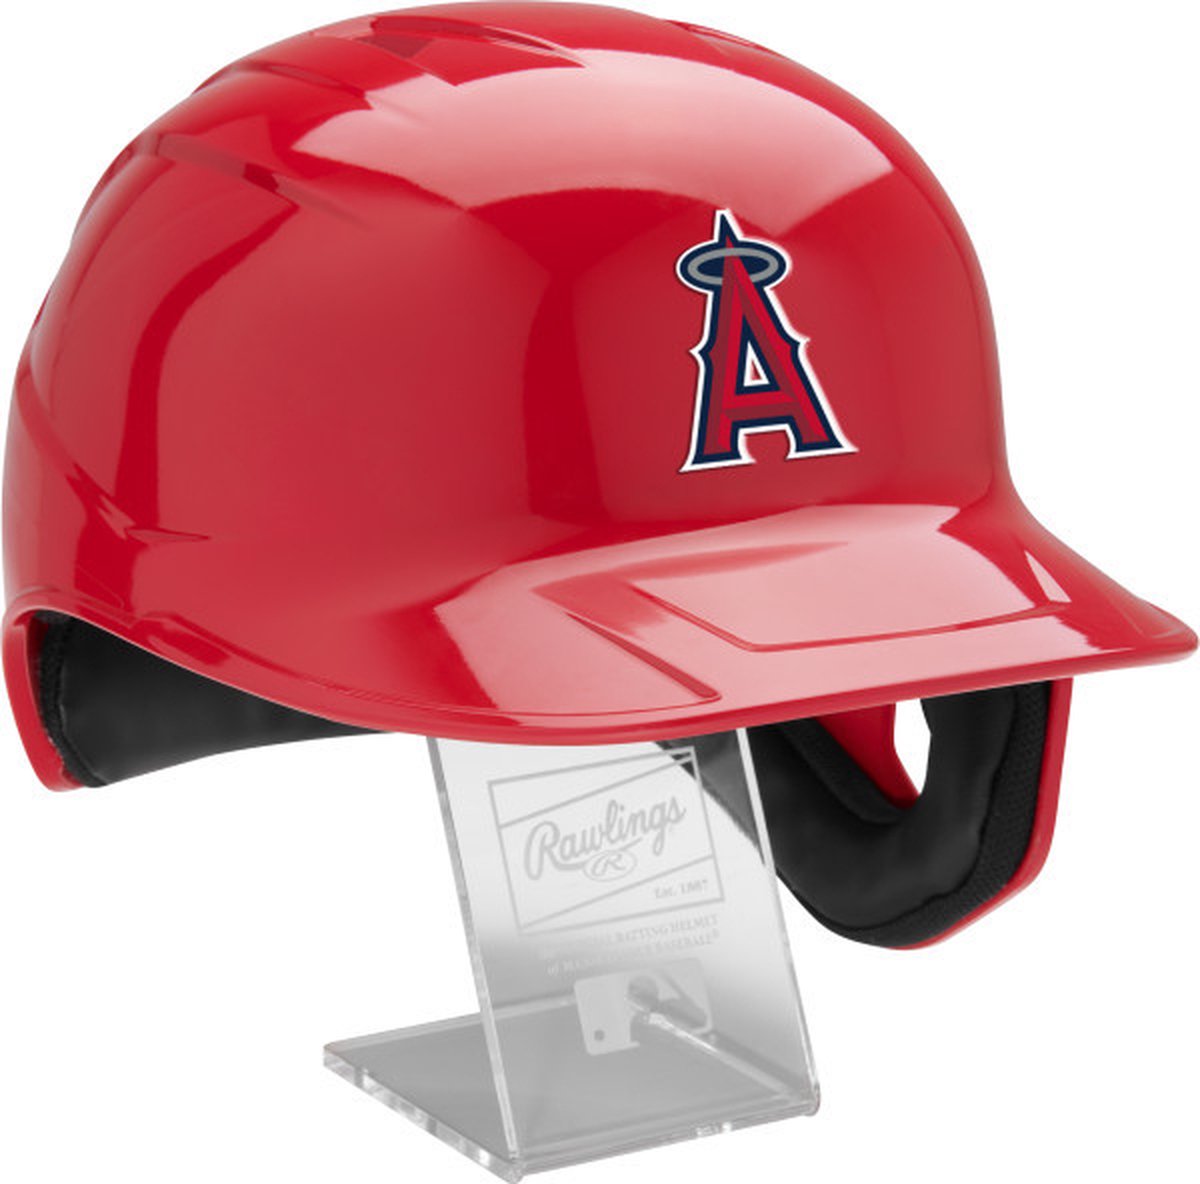 Rawlings MLB Mach Pro Replica Helmets Team Yankees